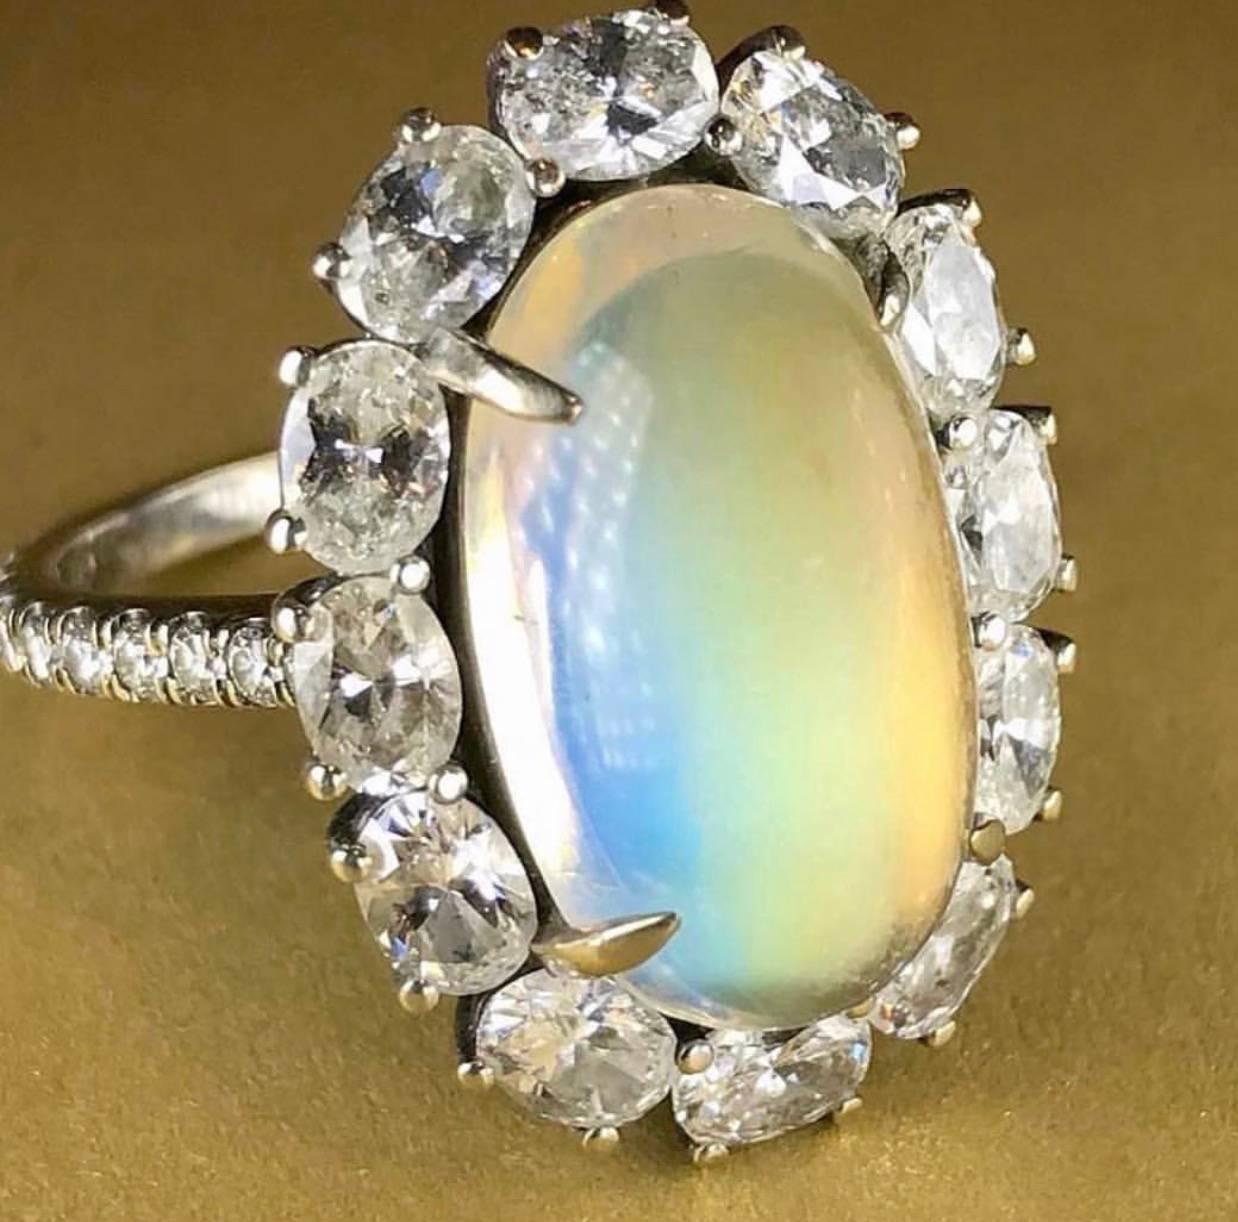 bella's moonstone ring